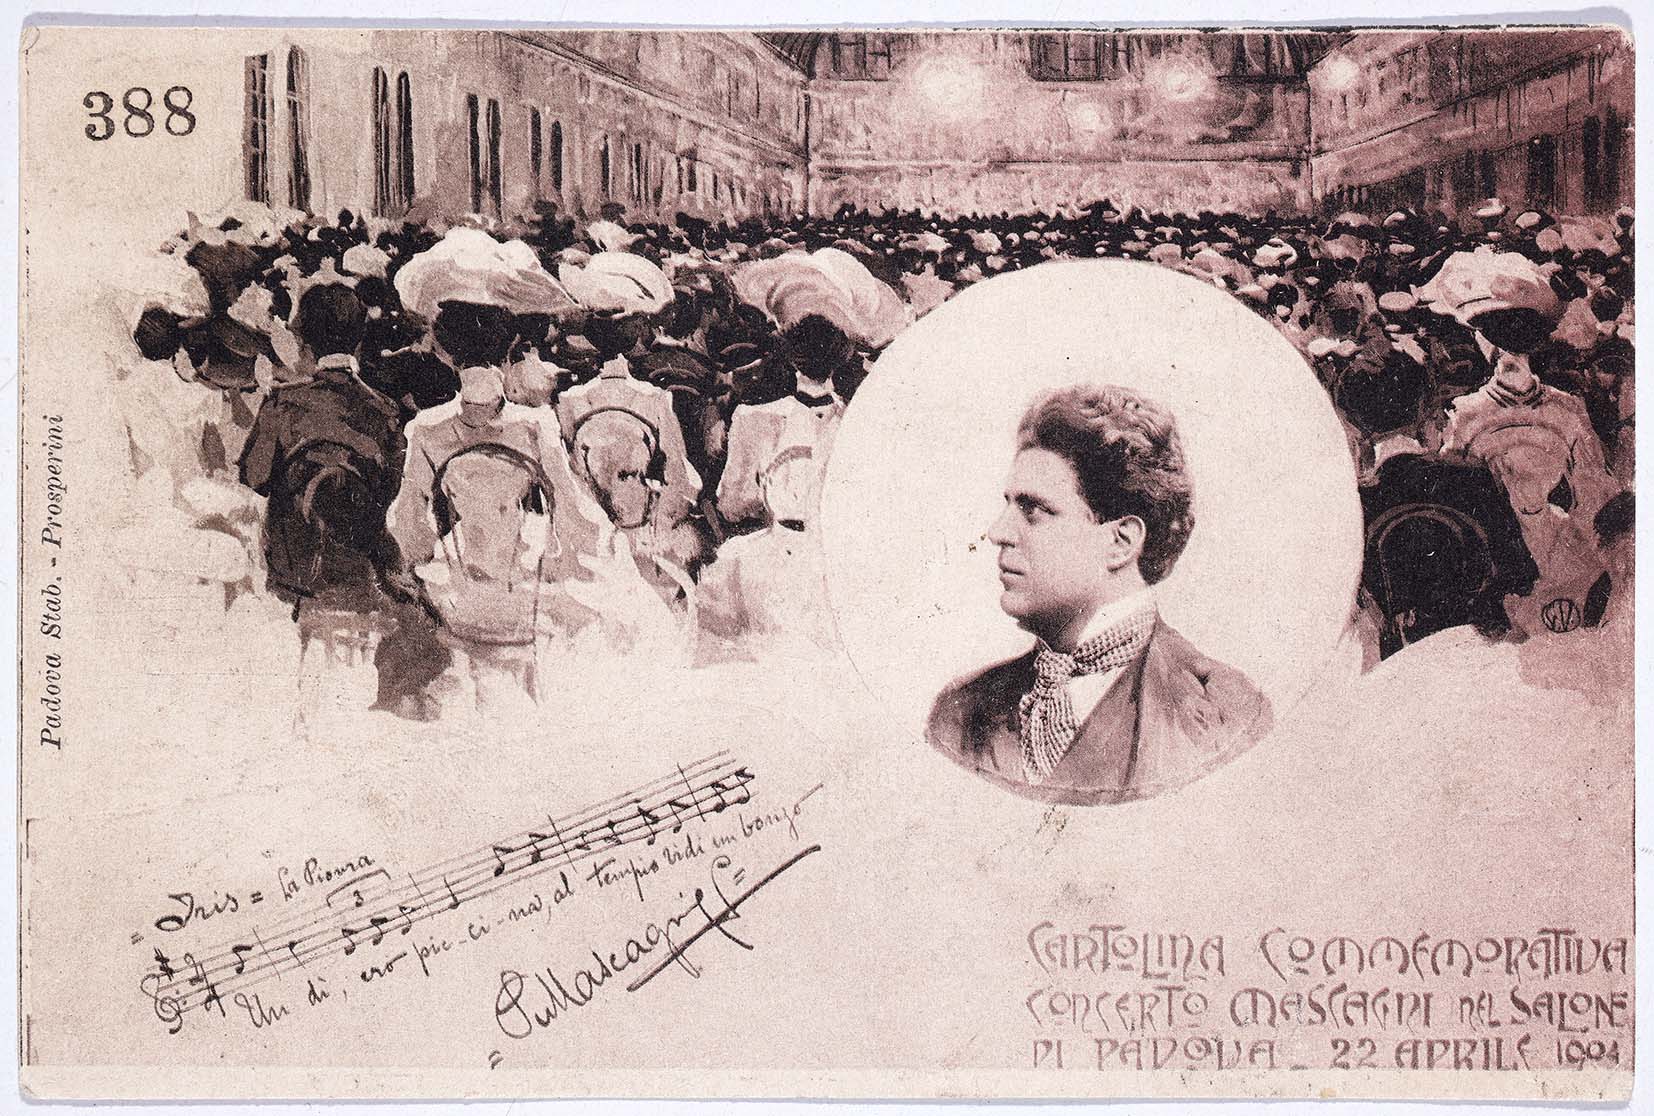 Cartolina commemorativa del concerto di Mascagni (1904), BC